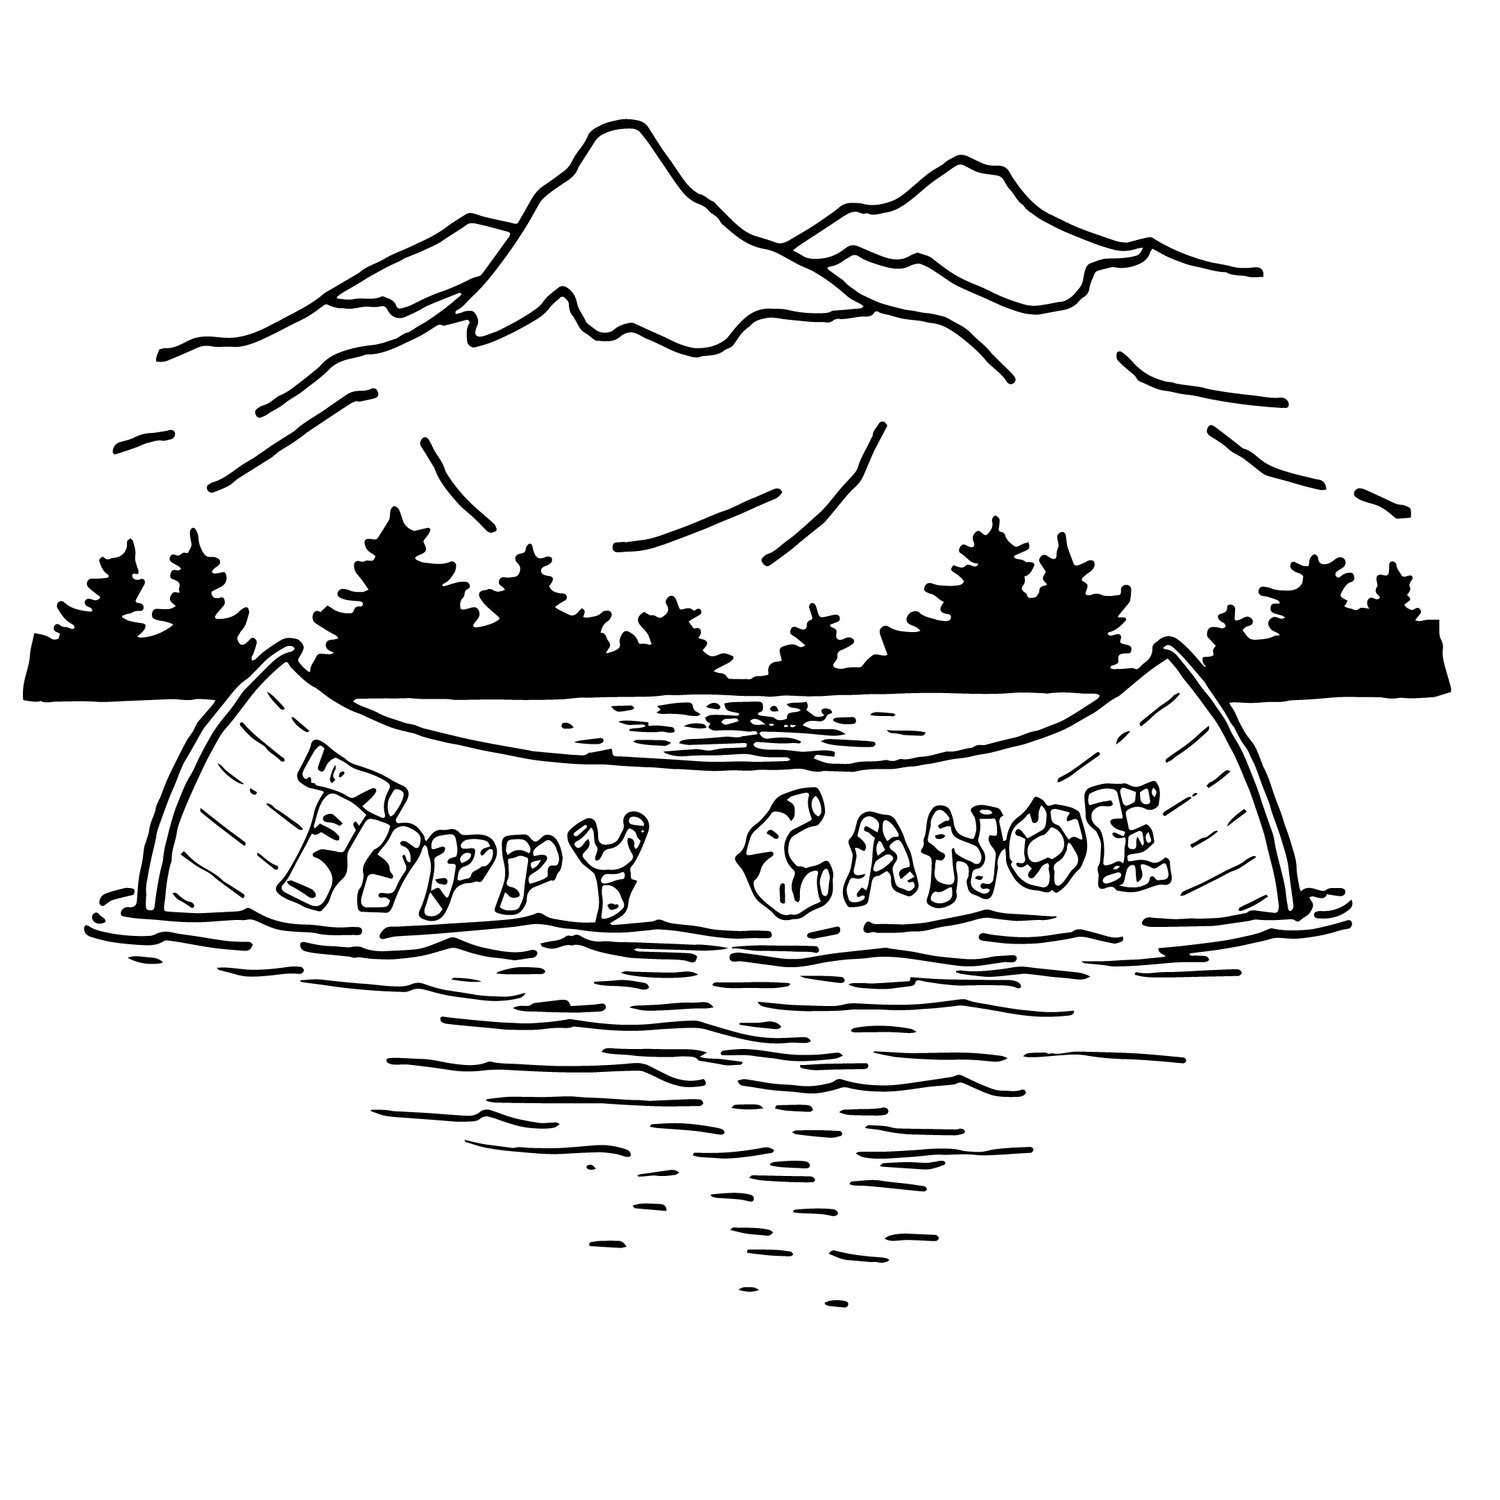 Tippy Canoe Productions